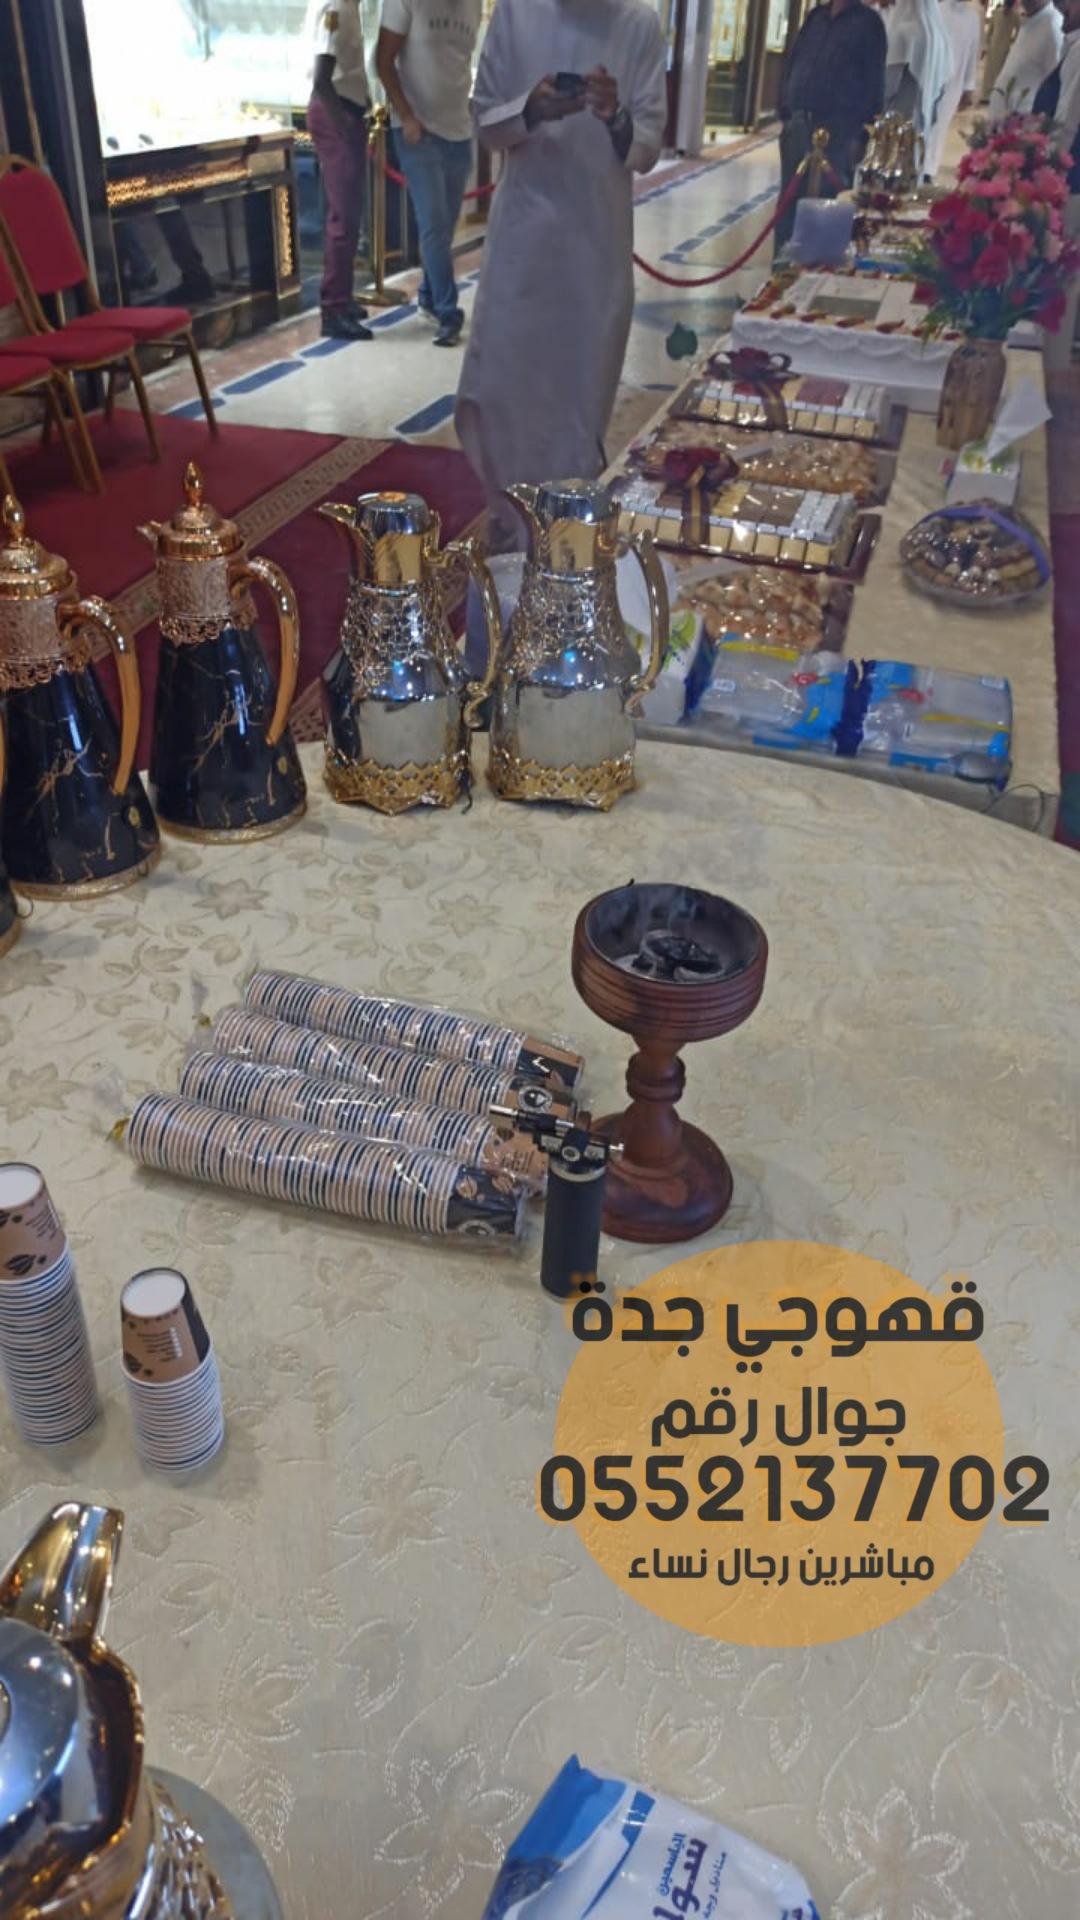 قهوجي وصبابين قهوه في جدة,0552137702 580131069